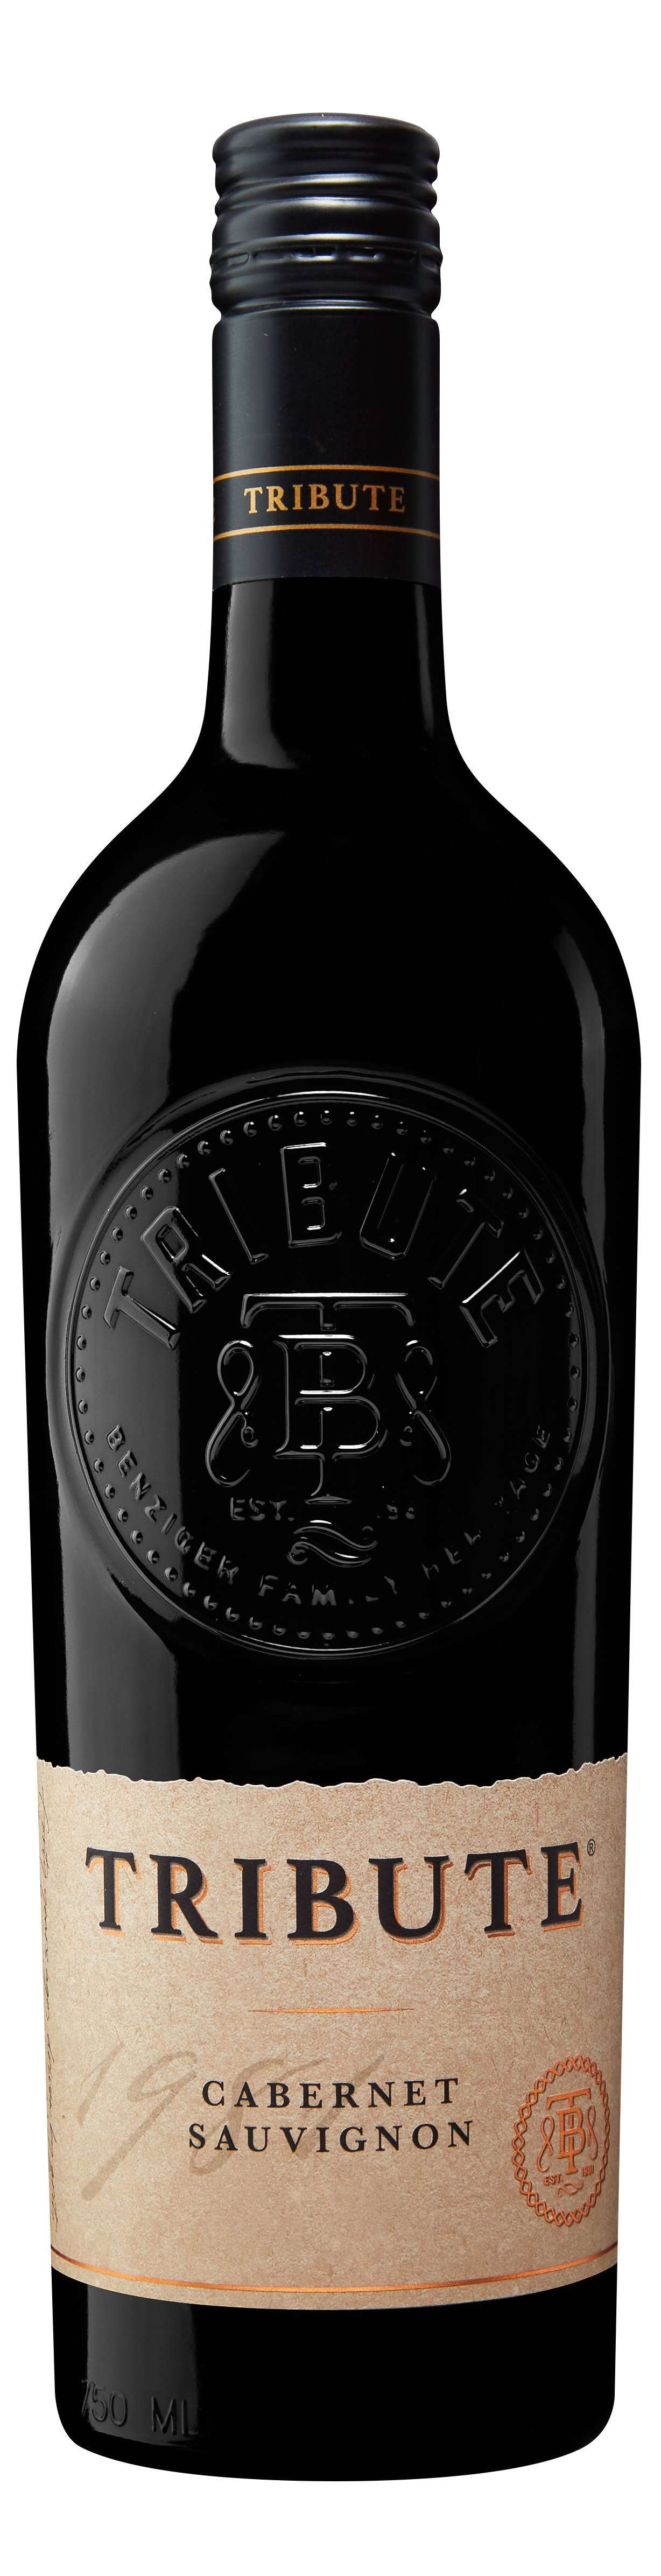 Tribute Cabernet Sauvignon, California - 750 ml